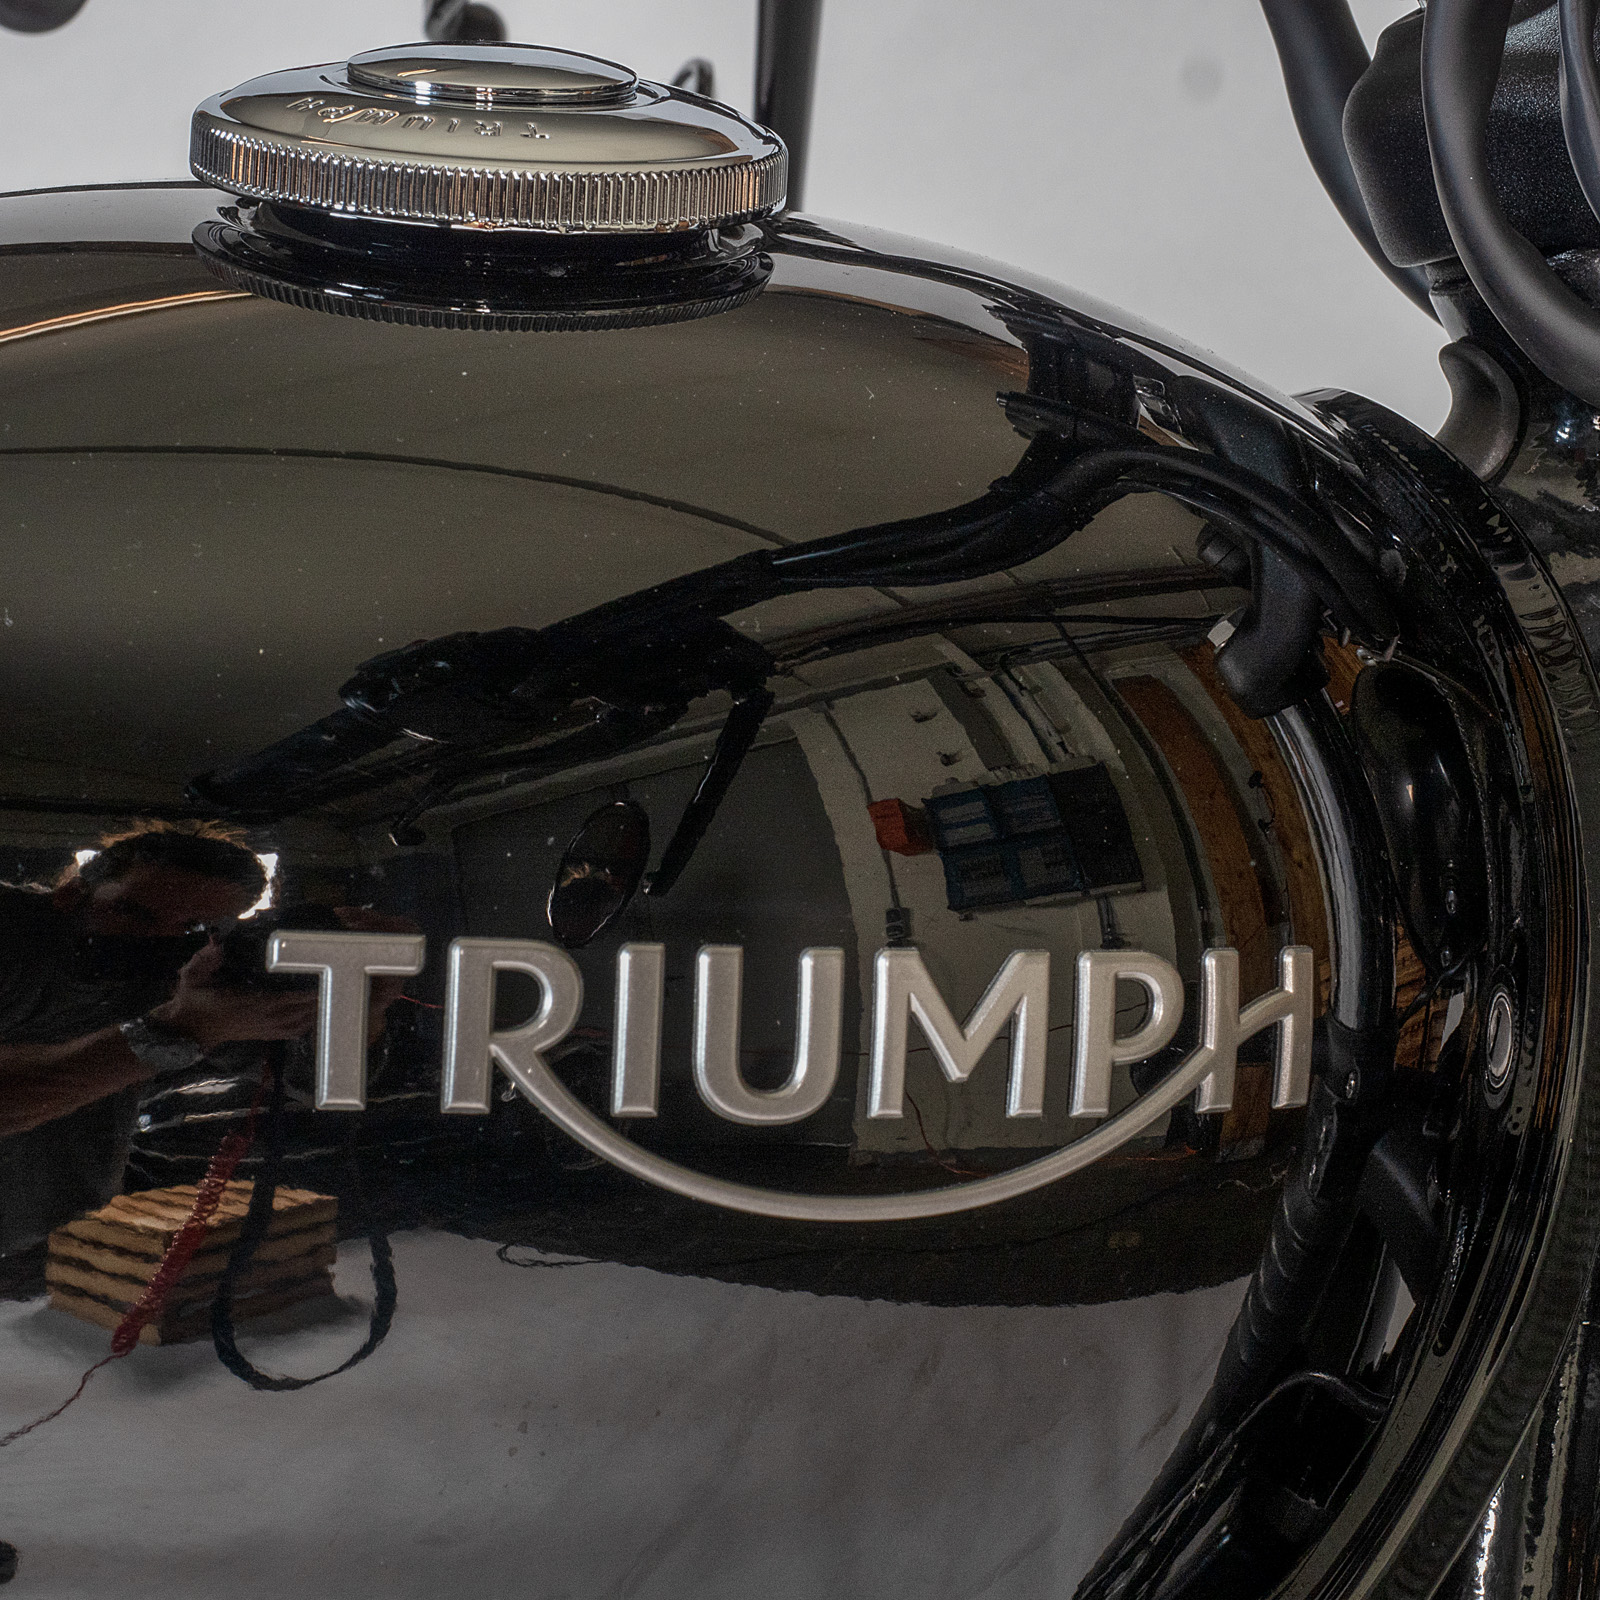 Triumph Schriftzug Logo 33mm x 120mm Aufkleber Sticker Silber - FD On, 5,90  €